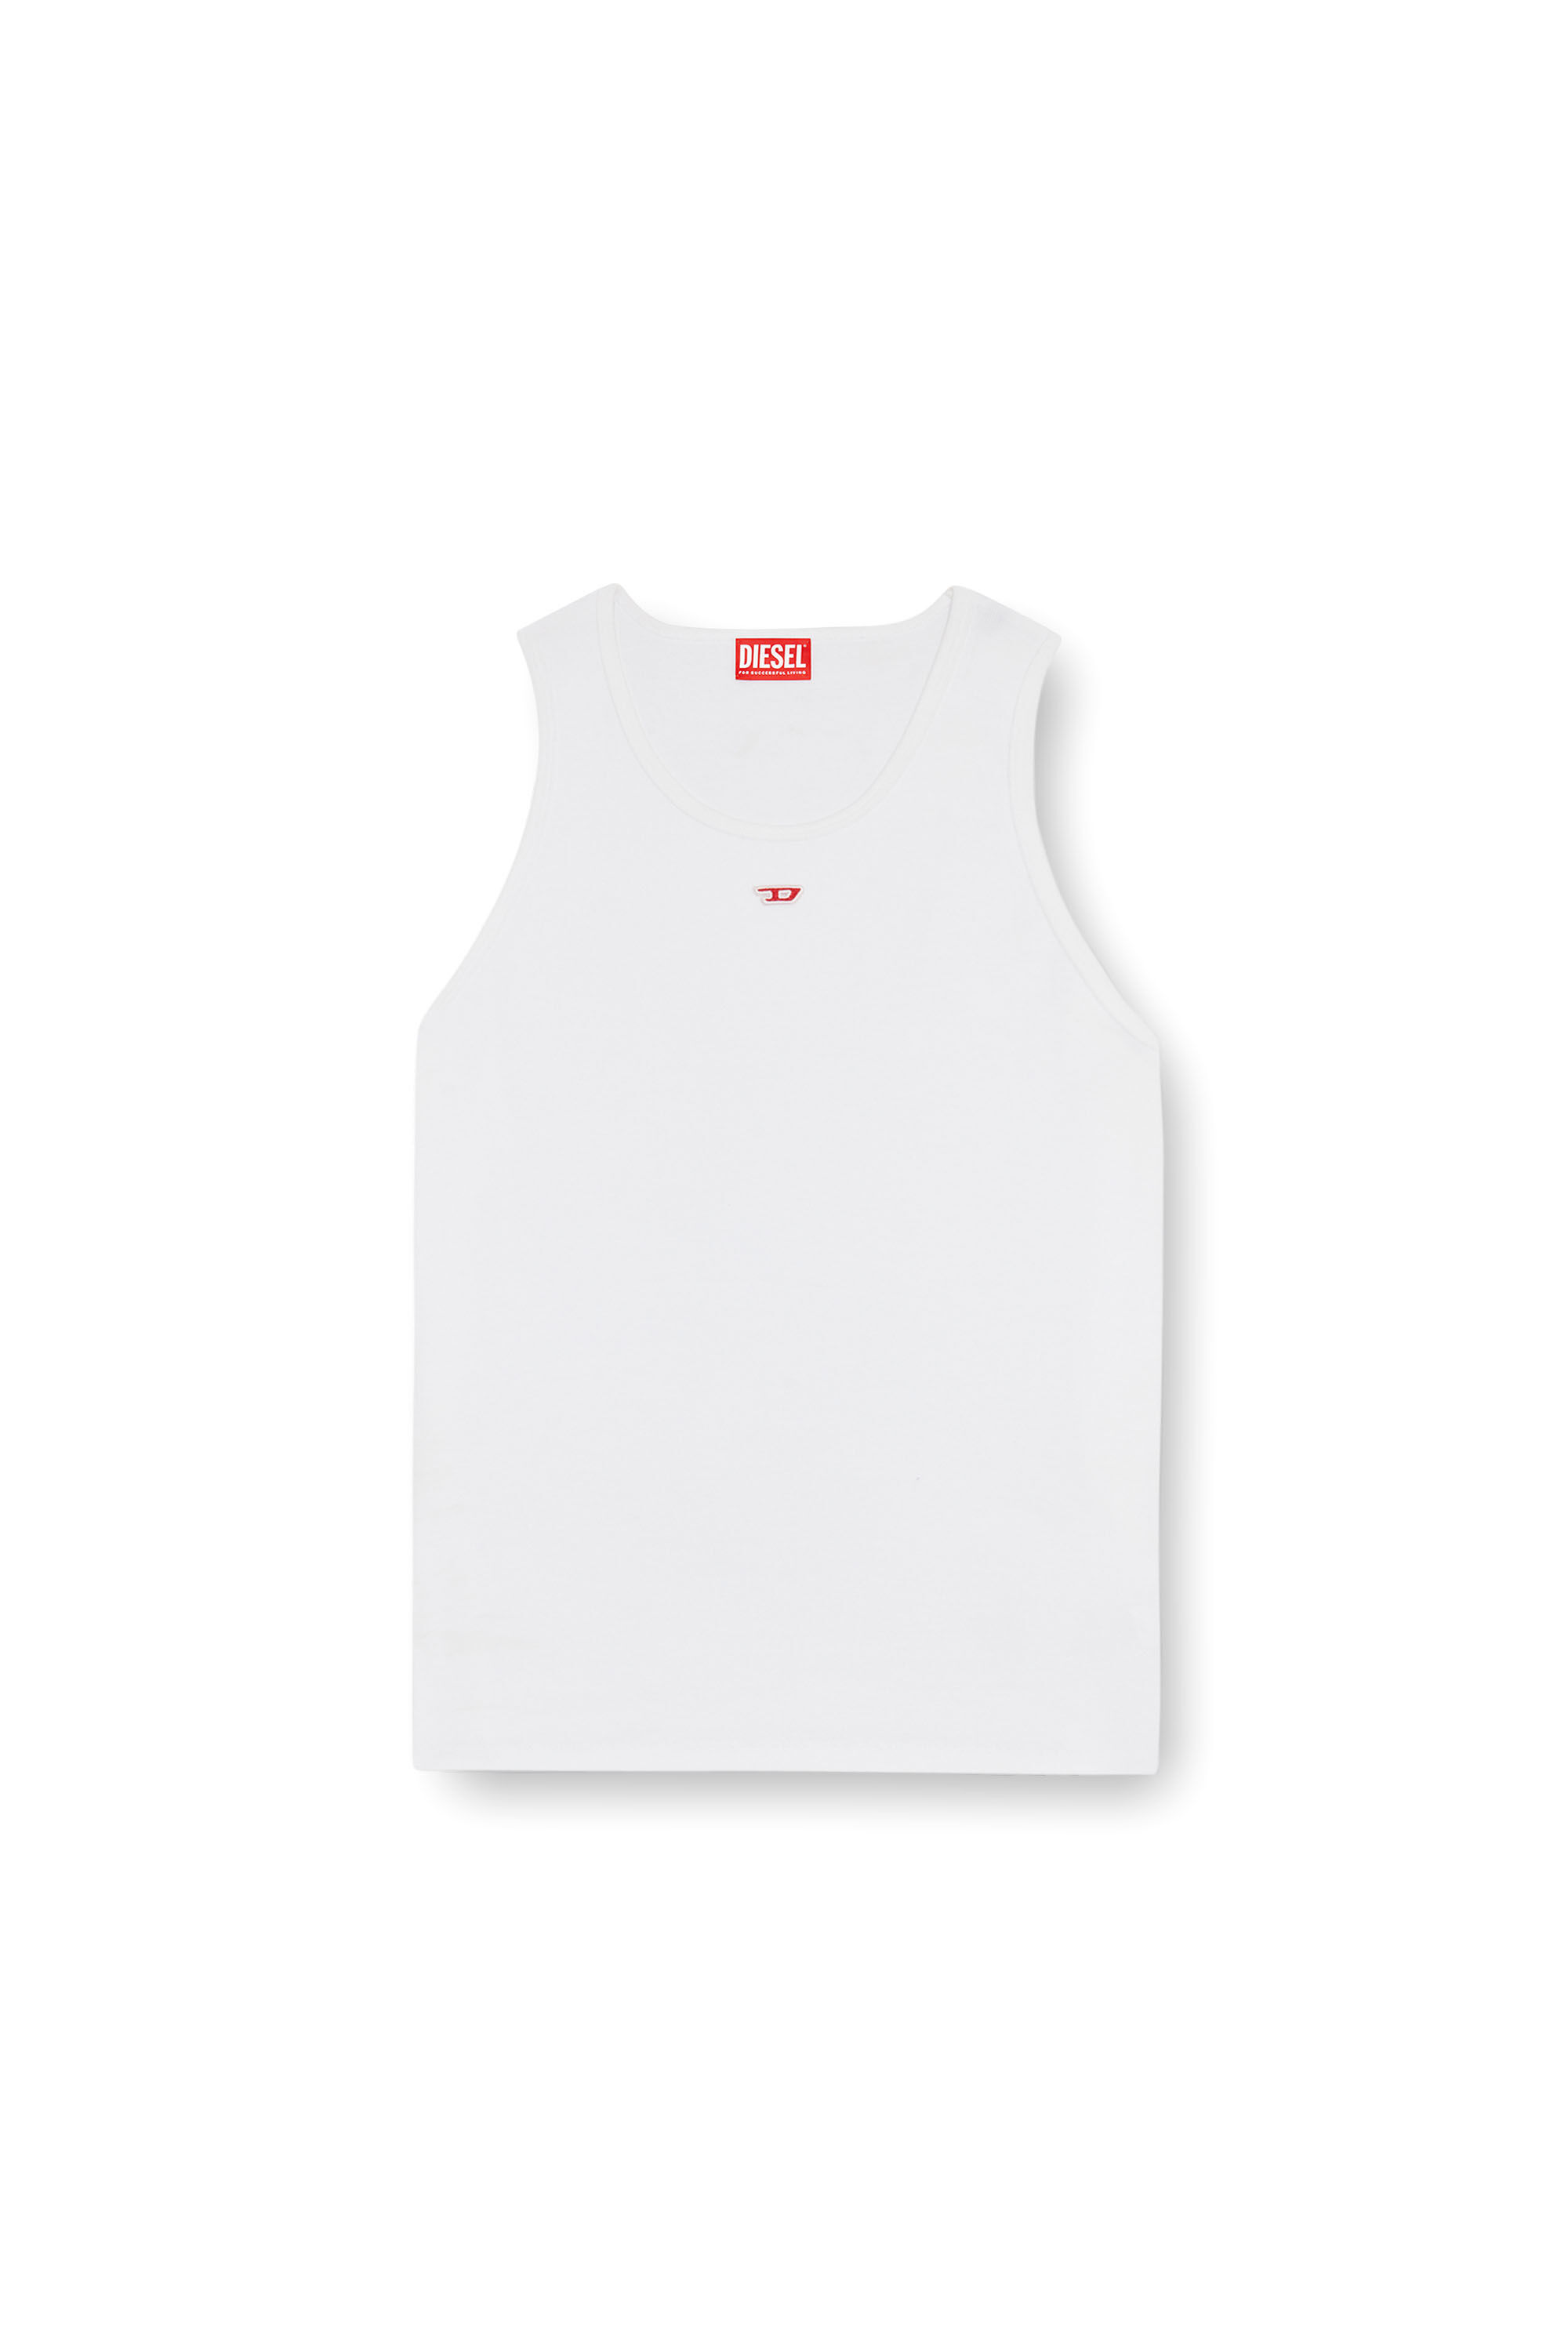 Diesel - T-LIFTY-D, Hombre Camiseta sin mangas con mini parche con el logotipo D in Blanco - Image 2